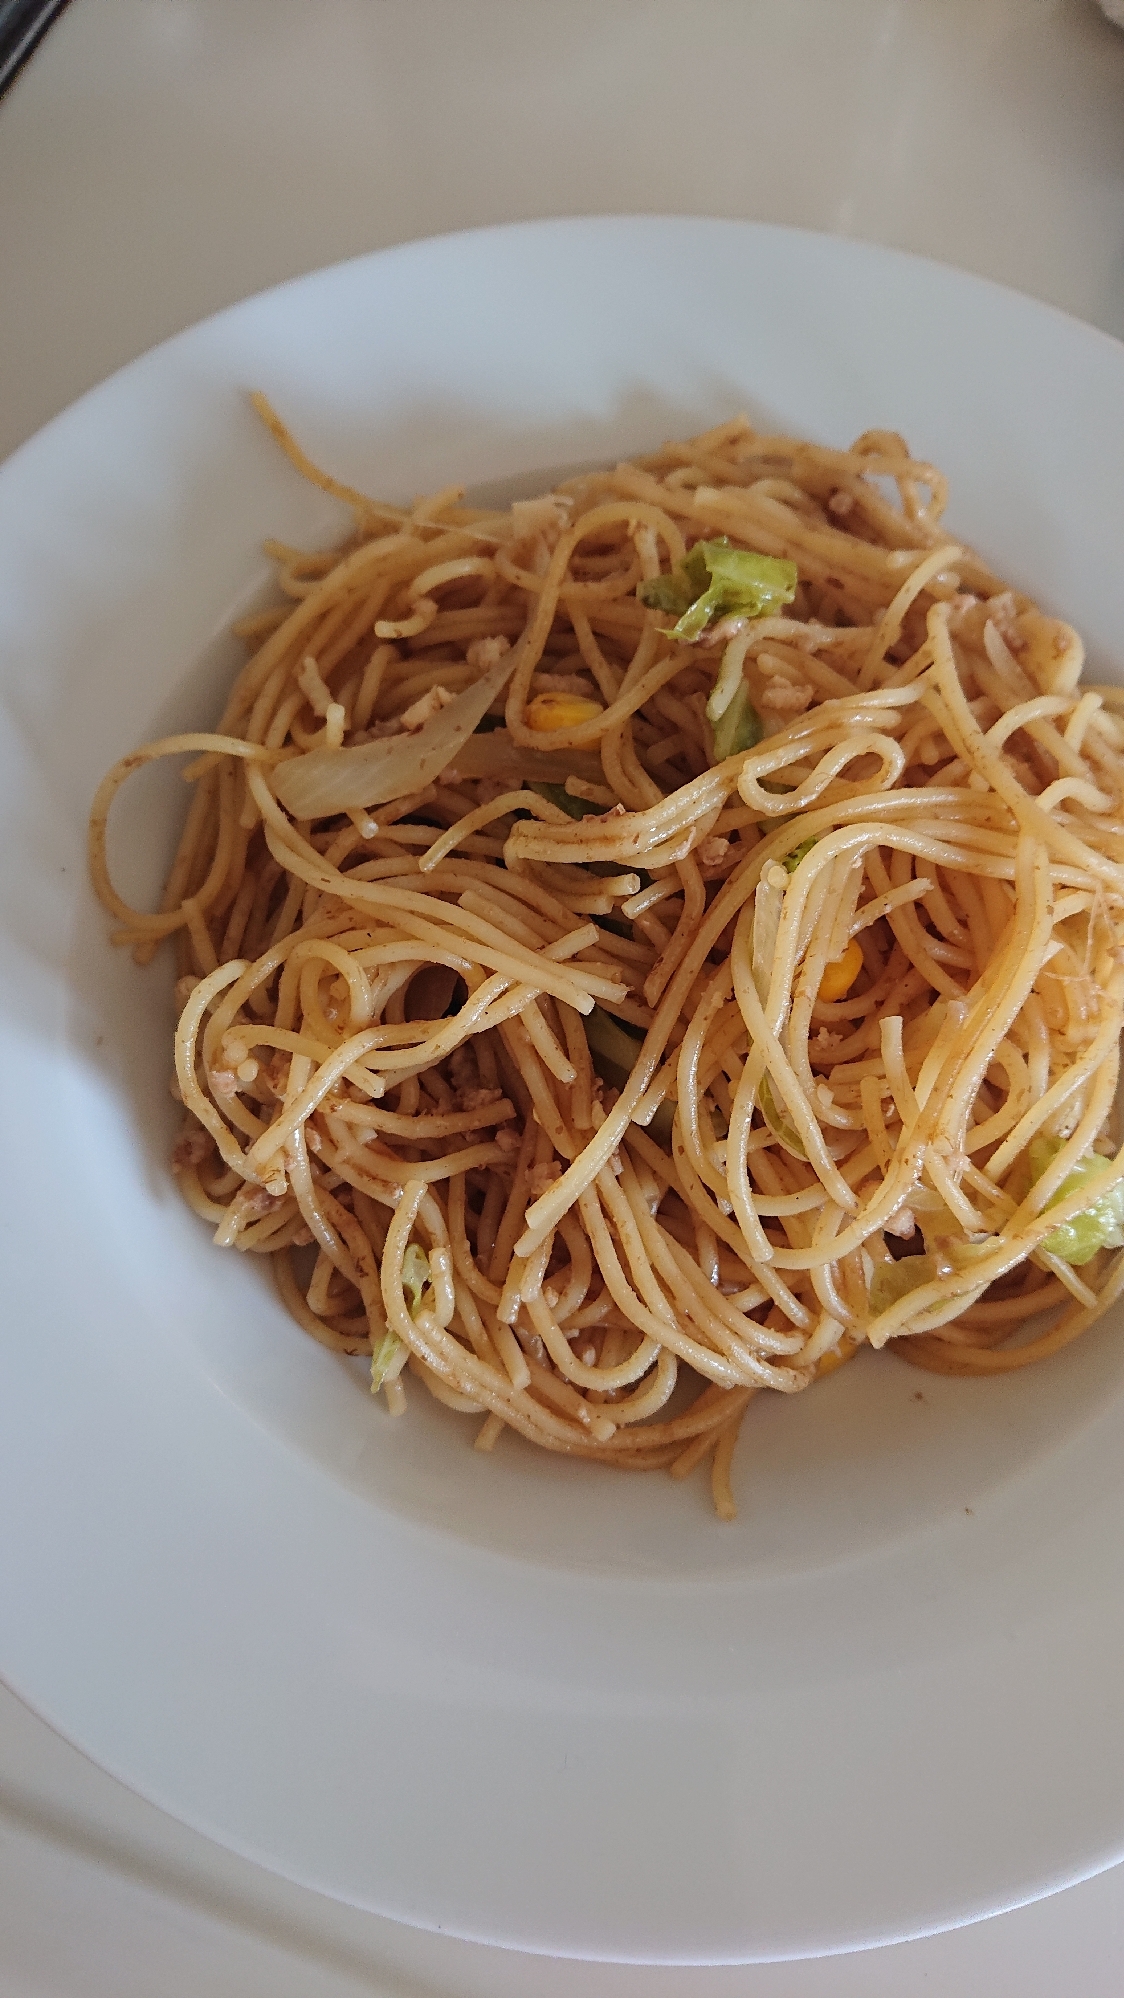 《中華麺の代わりに》スパゲッティで焼きそば風パスタ